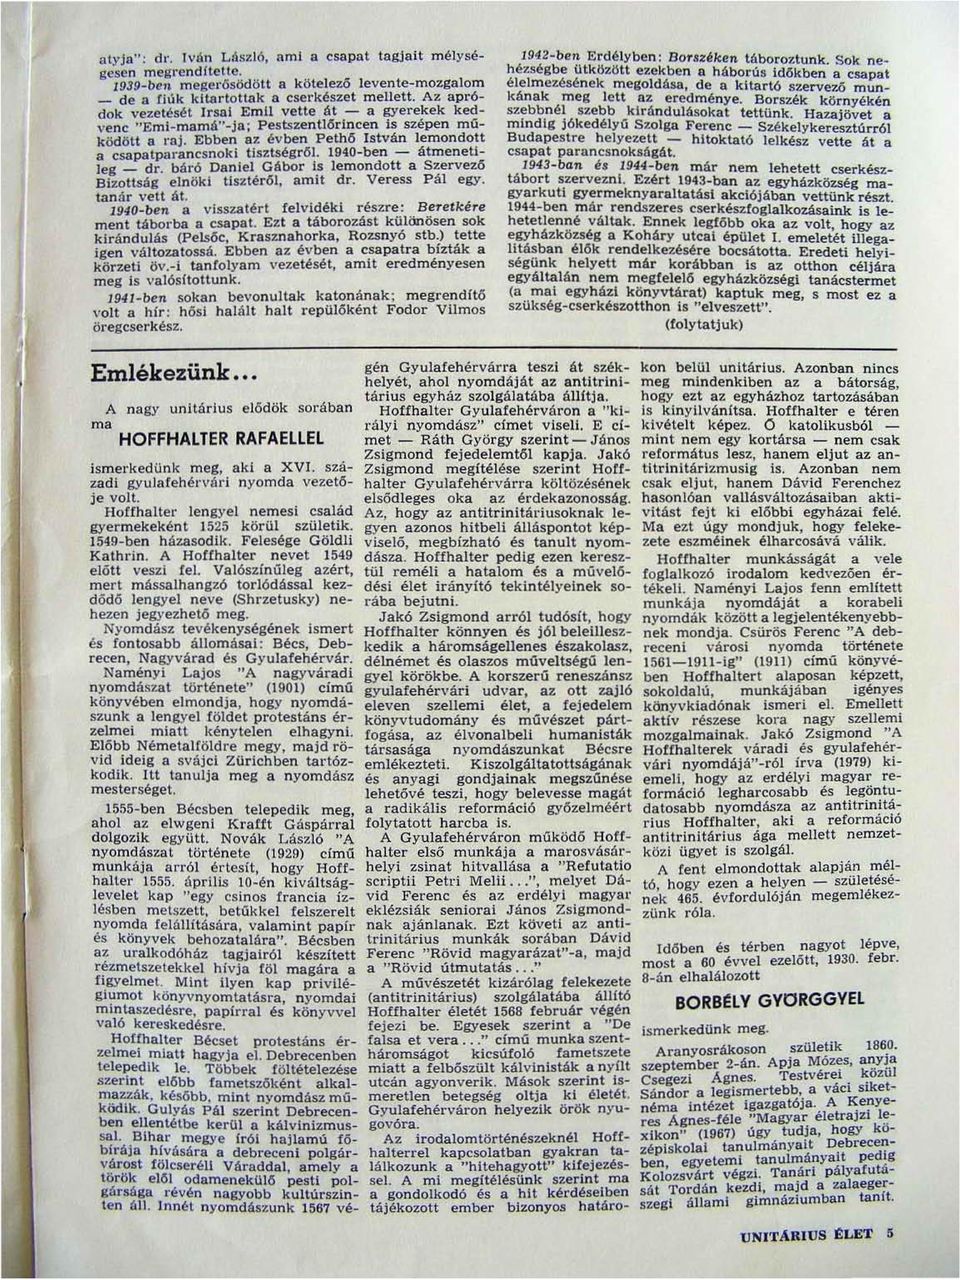 1940-ben - átmenetileg _ dr. báró Daniel Gábor is lemondott a Szervező Bizottság elnökl tisztéről, 8mit dr. Veress Pál egy. tanár vett át.